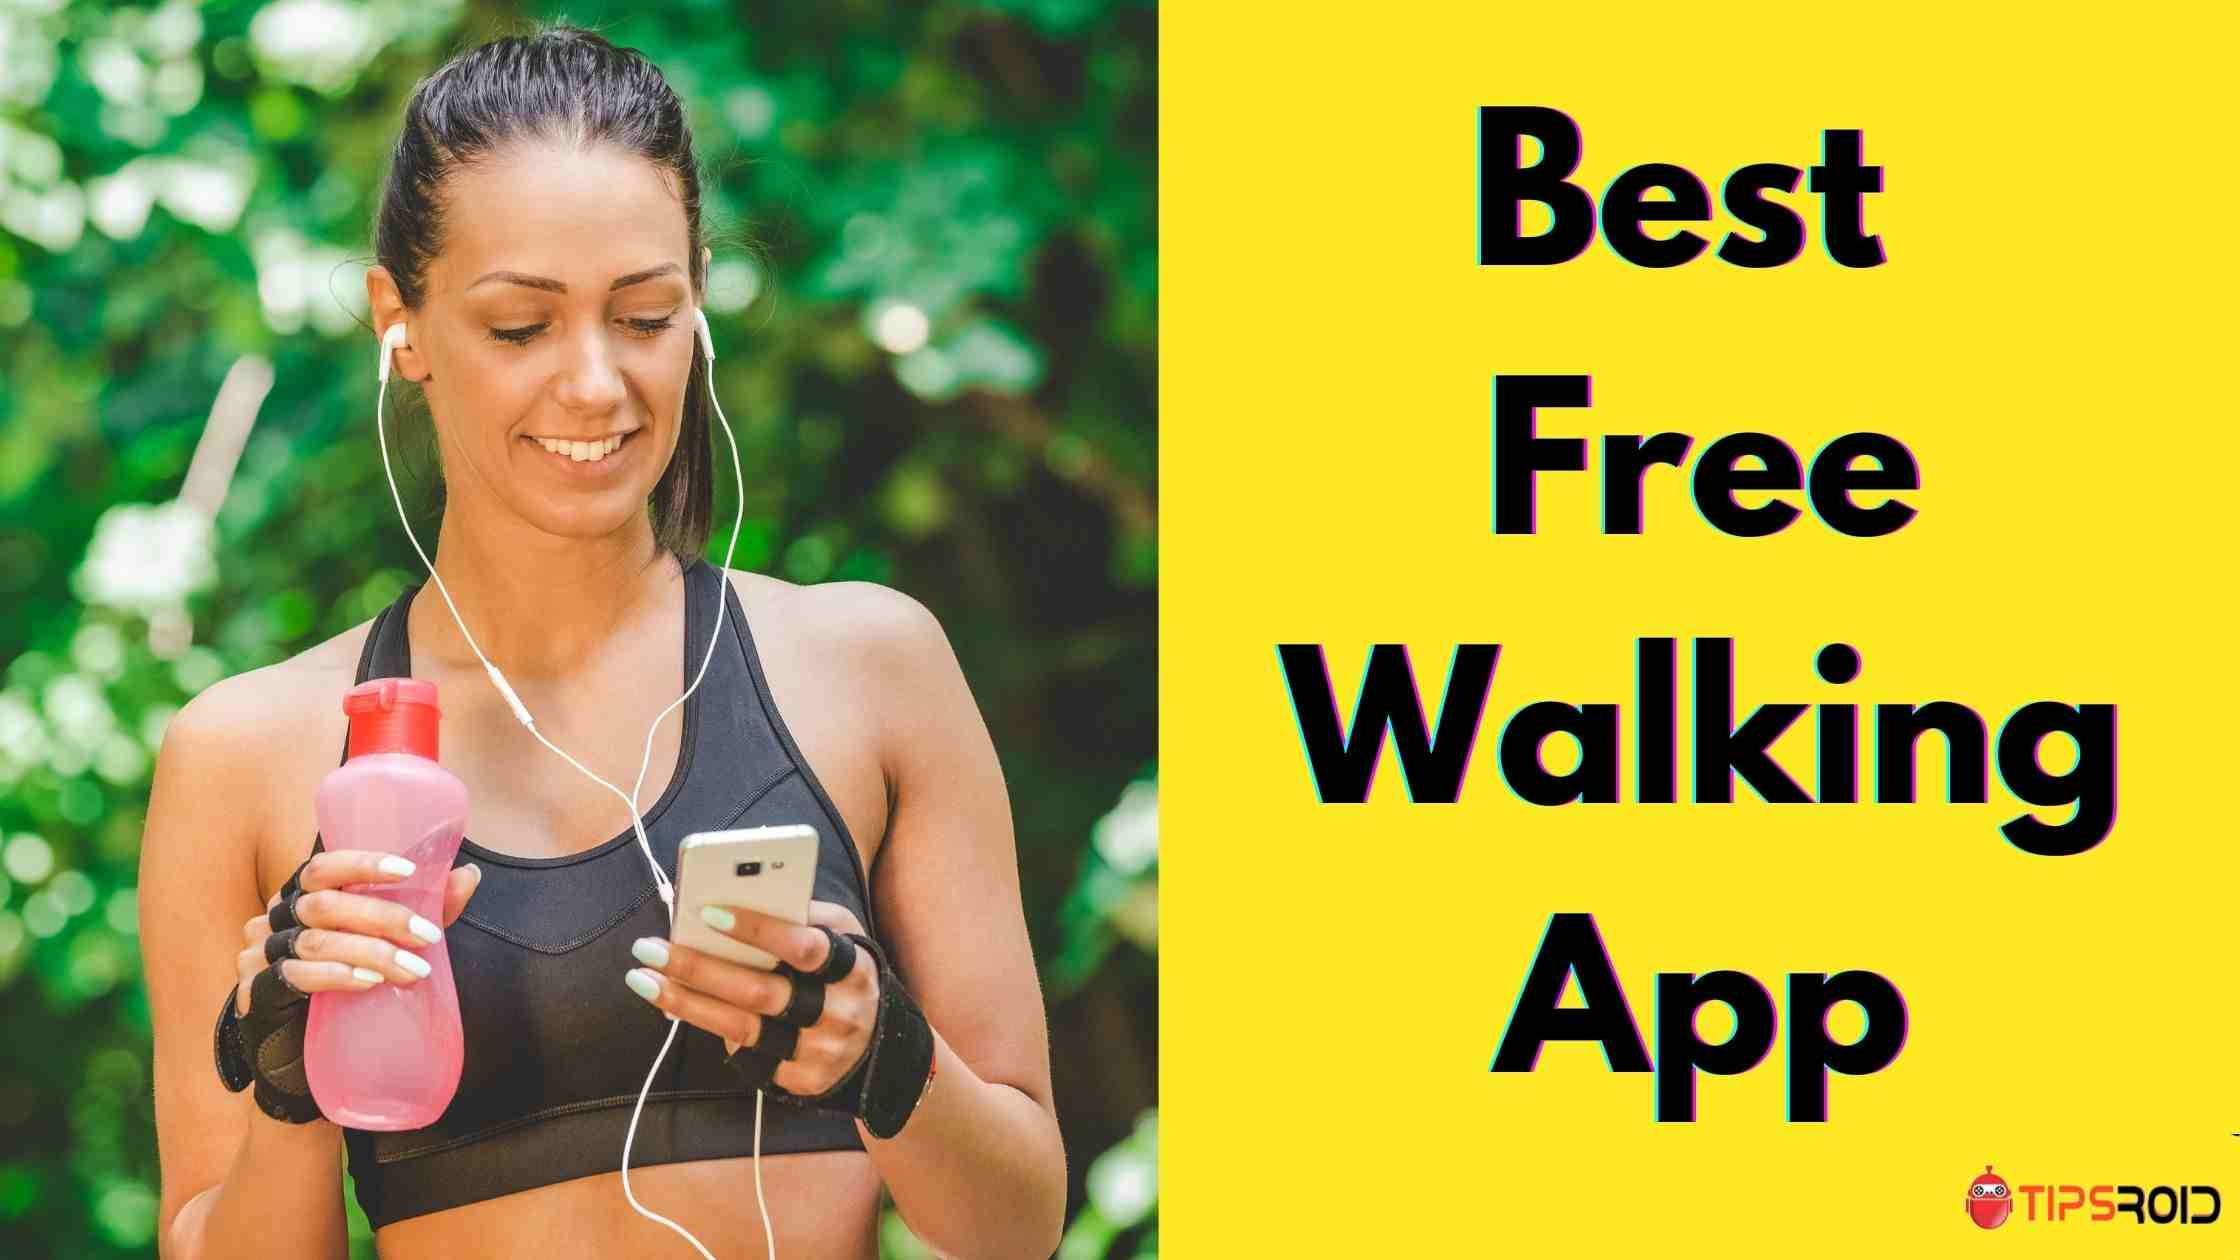 Free Walking App